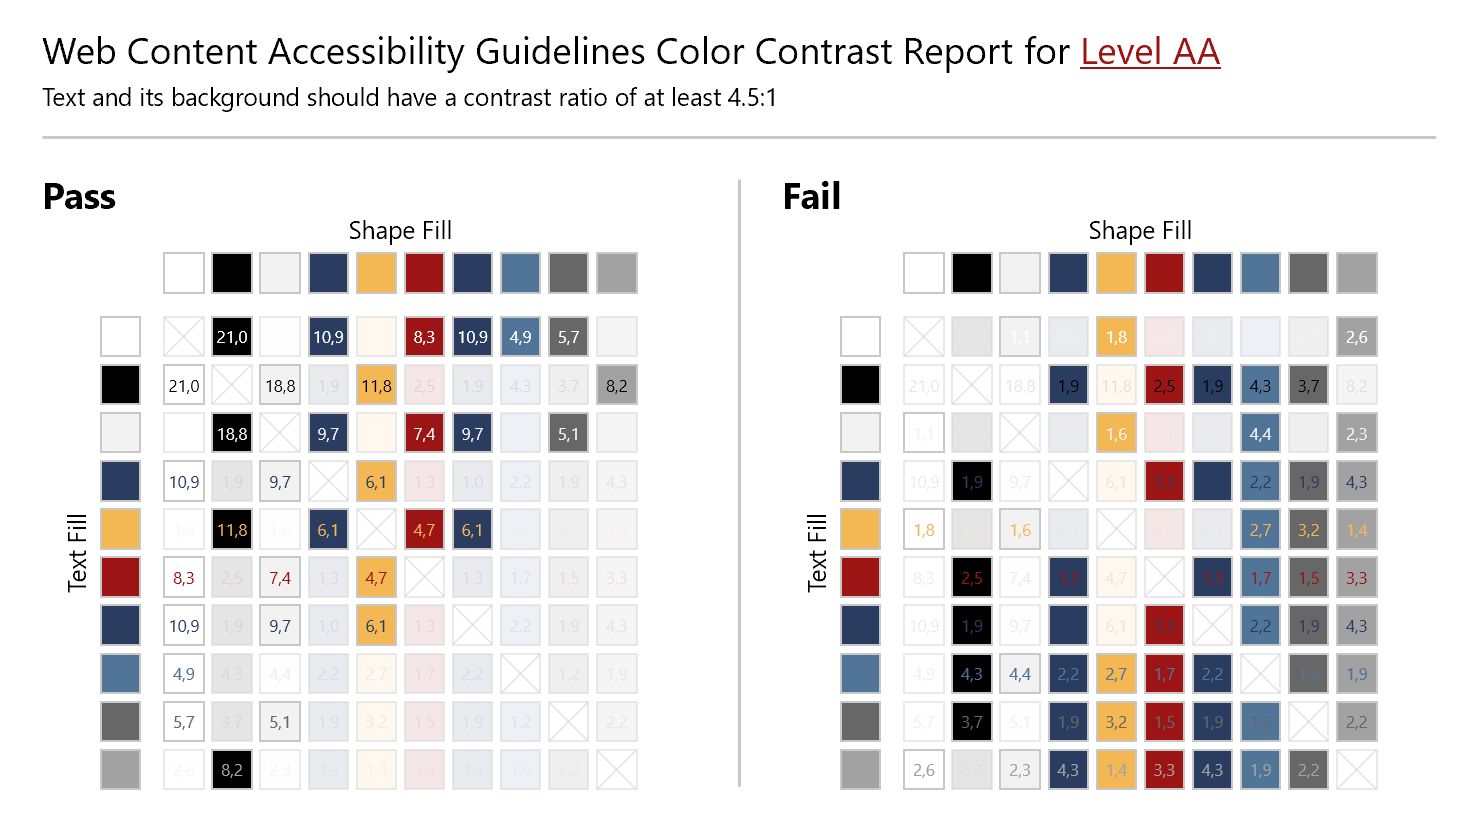 Screenshot des Color Contrast Reports for Level AA für eine Beispielpalette. Auf der linken Seite werden Farbkombinationen angezeigt, die die Kontrastanforderungen erfüllen, auf der rechten Seite die Farbkombinationen, welche die Anforderungen nicht erfüllen. In den Farbfeldern sind jeweils die Kontrastwerte angegeben.